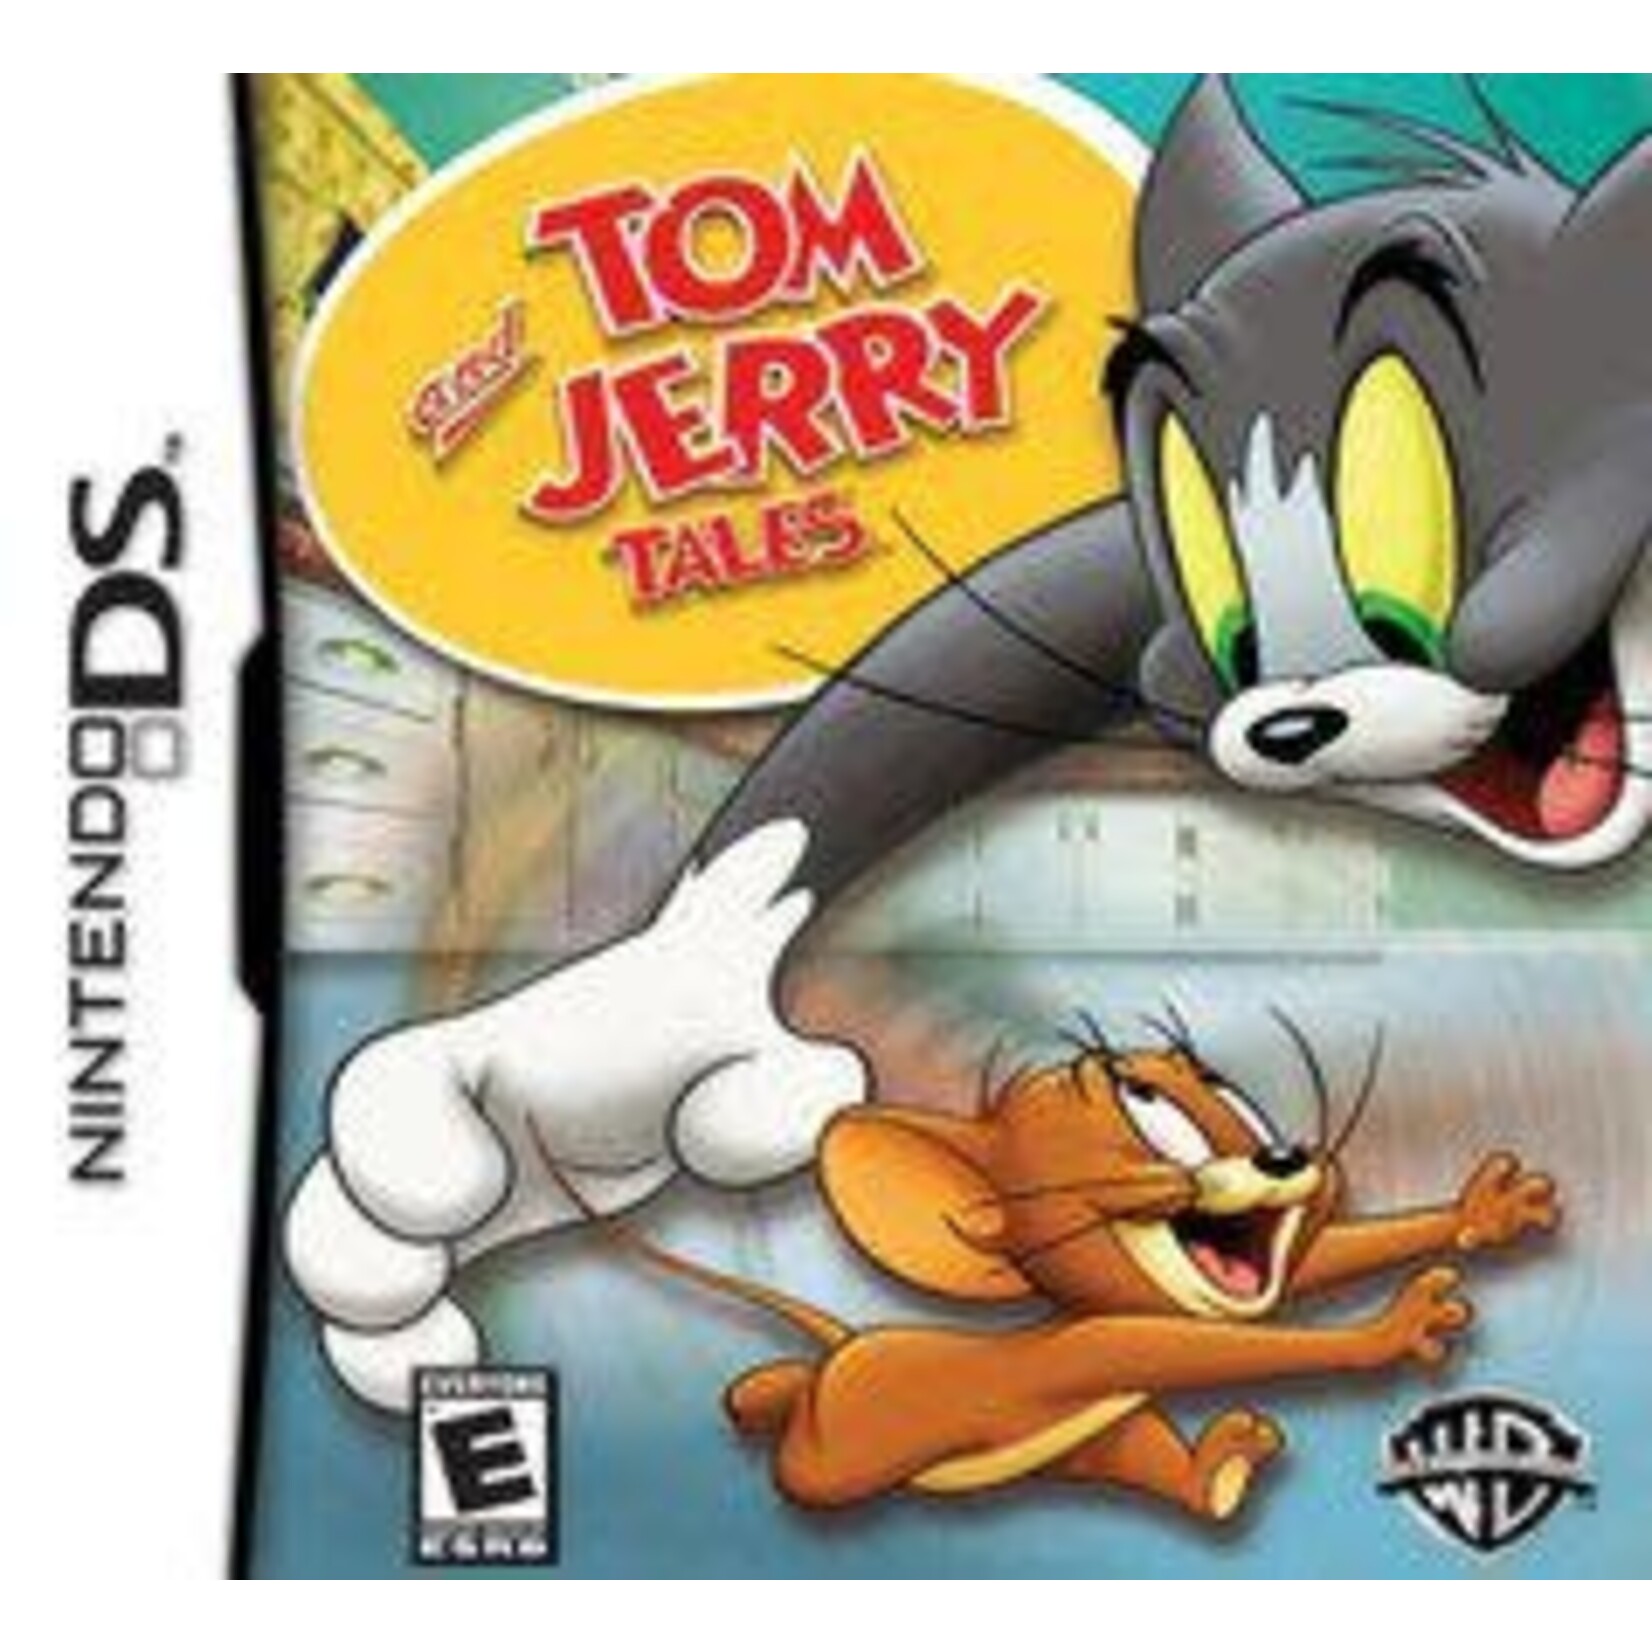 DSU-Tom & Jerry Tales